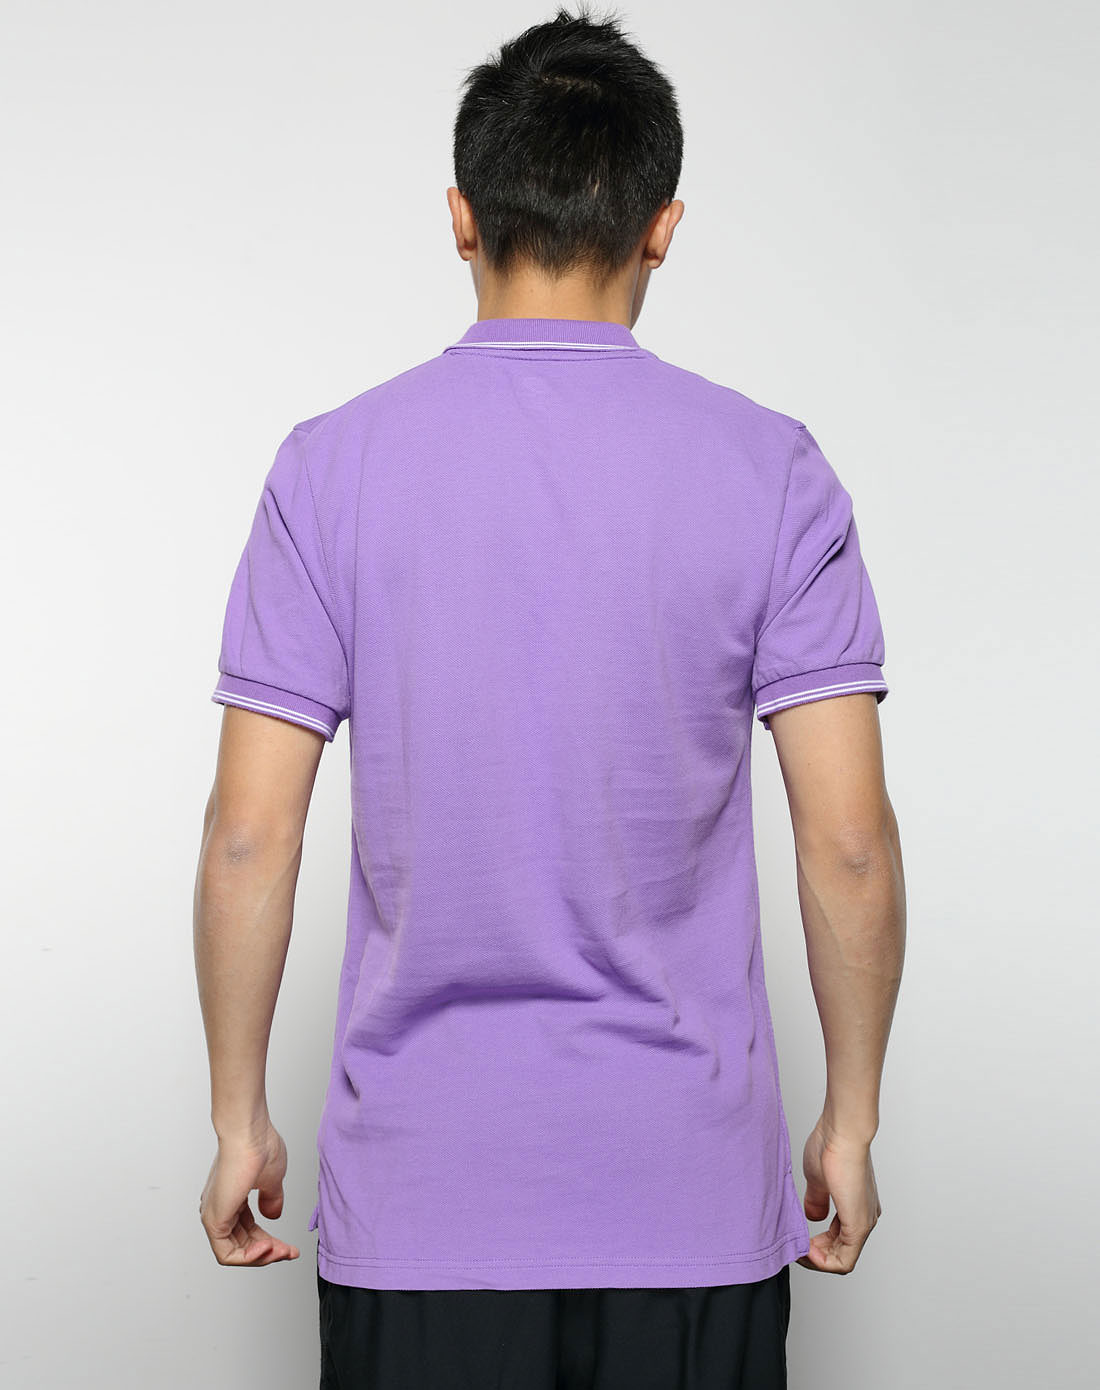 男子紫色短袖polo衫